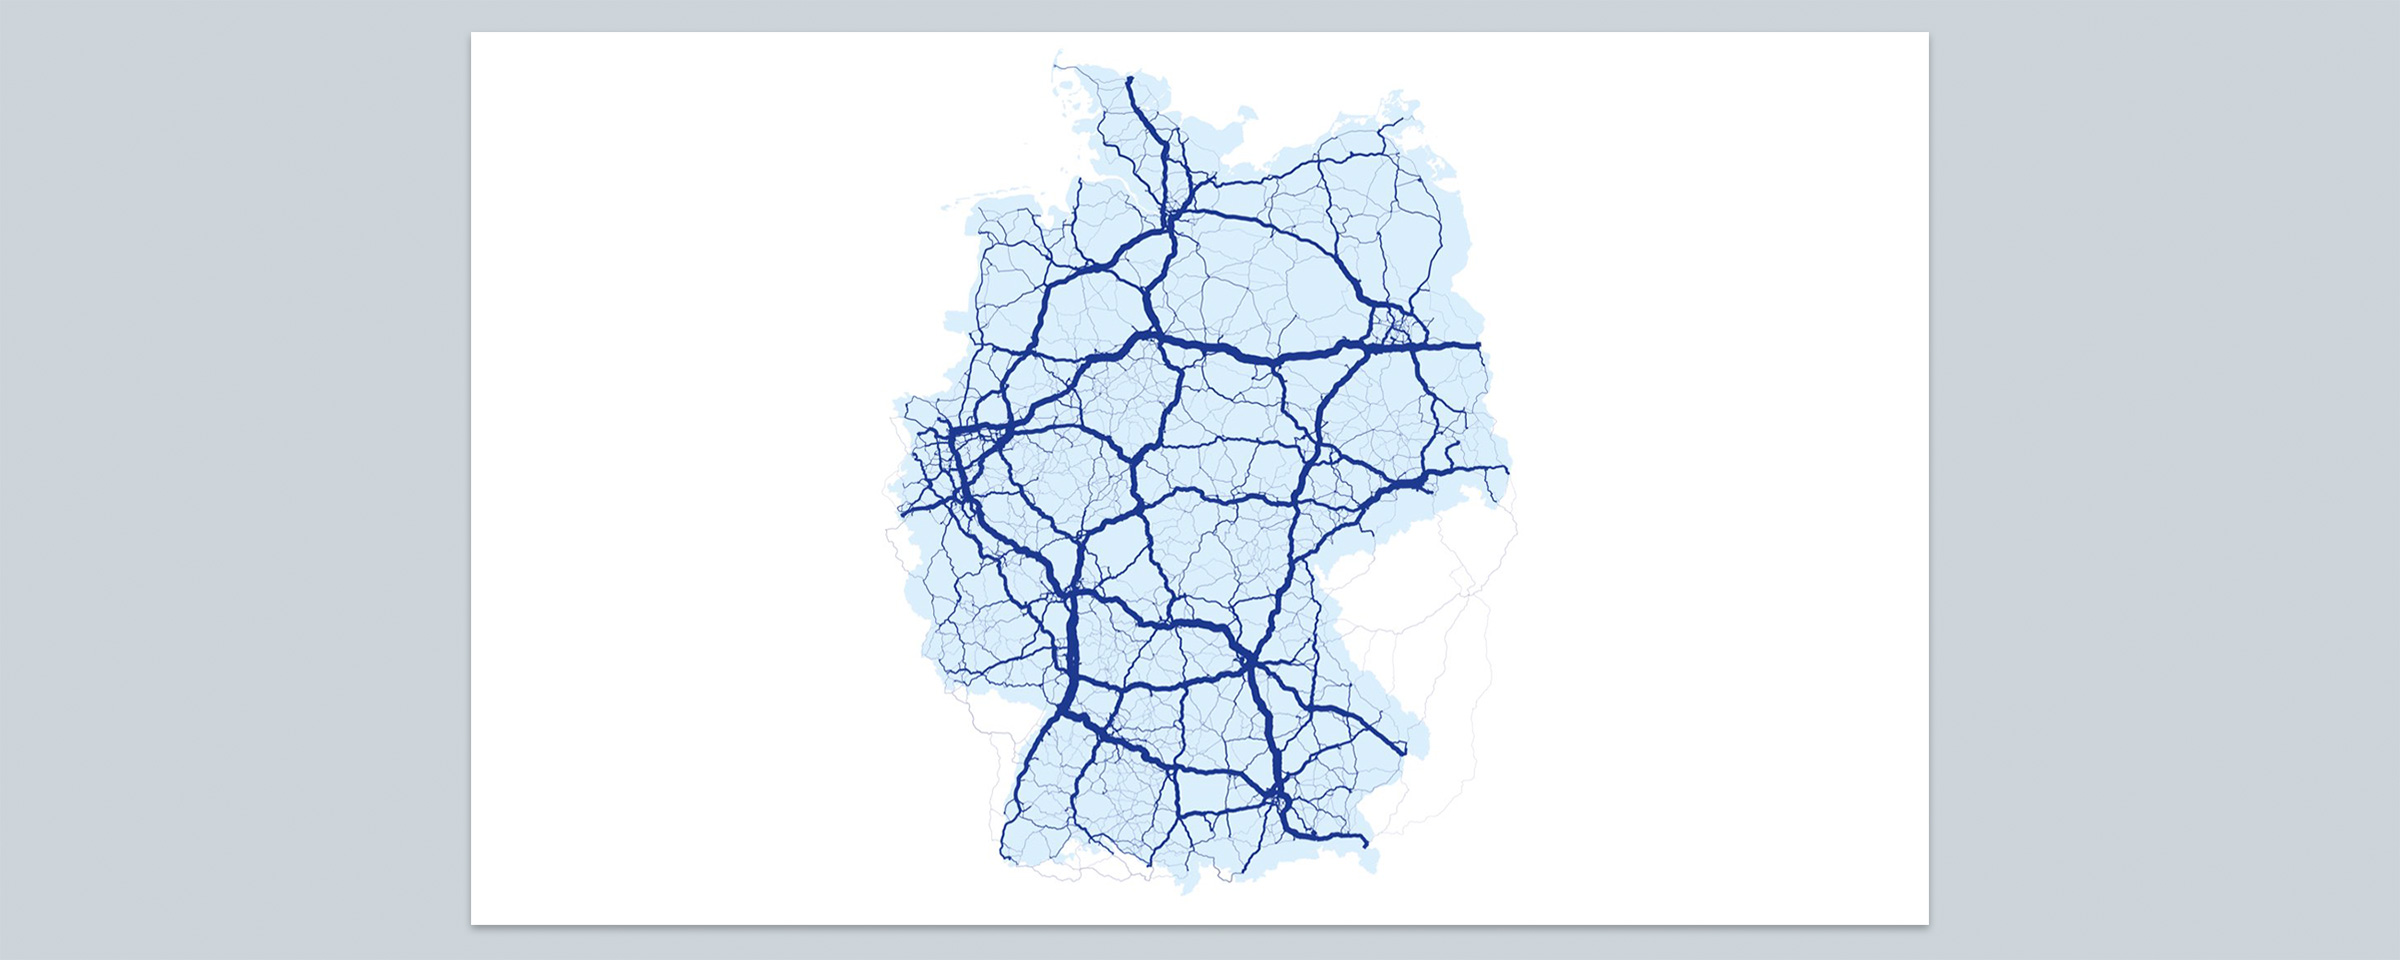 Datenanalyse basierend auf Verkehrsinformationen